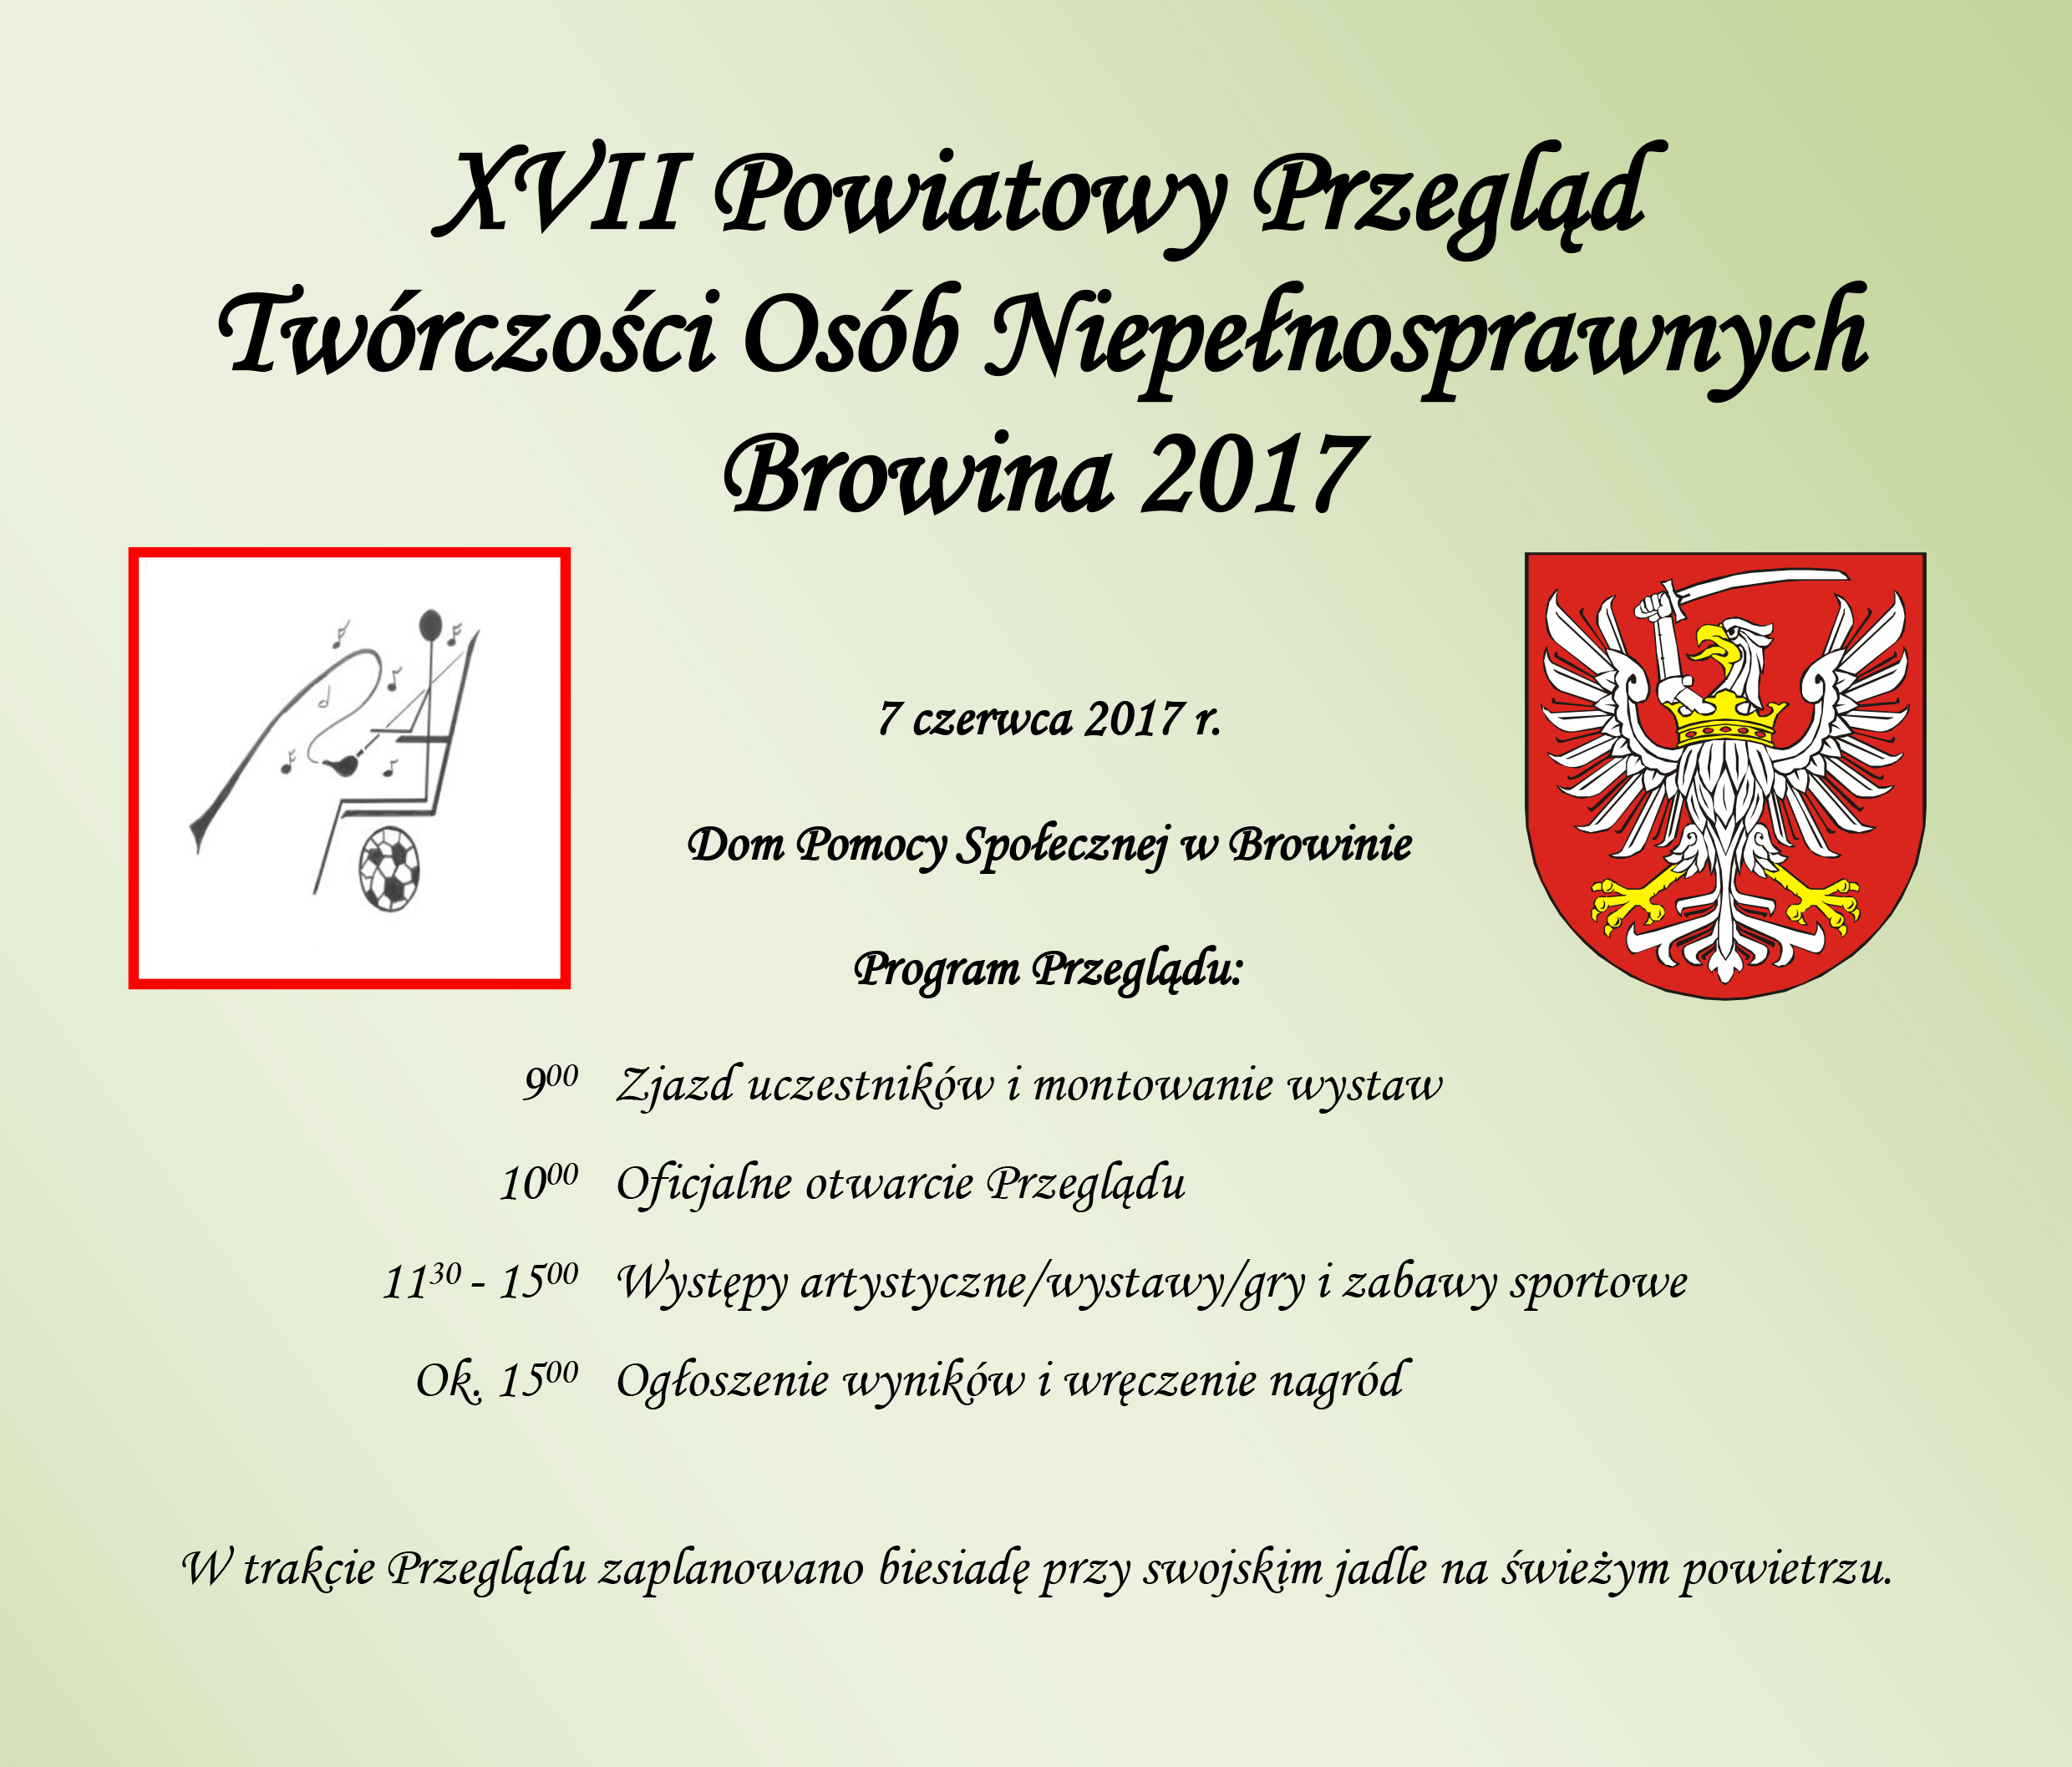 XVII Powiatowy Przegląd Twórczości Osób Niepełnosprawnych Browina 2017